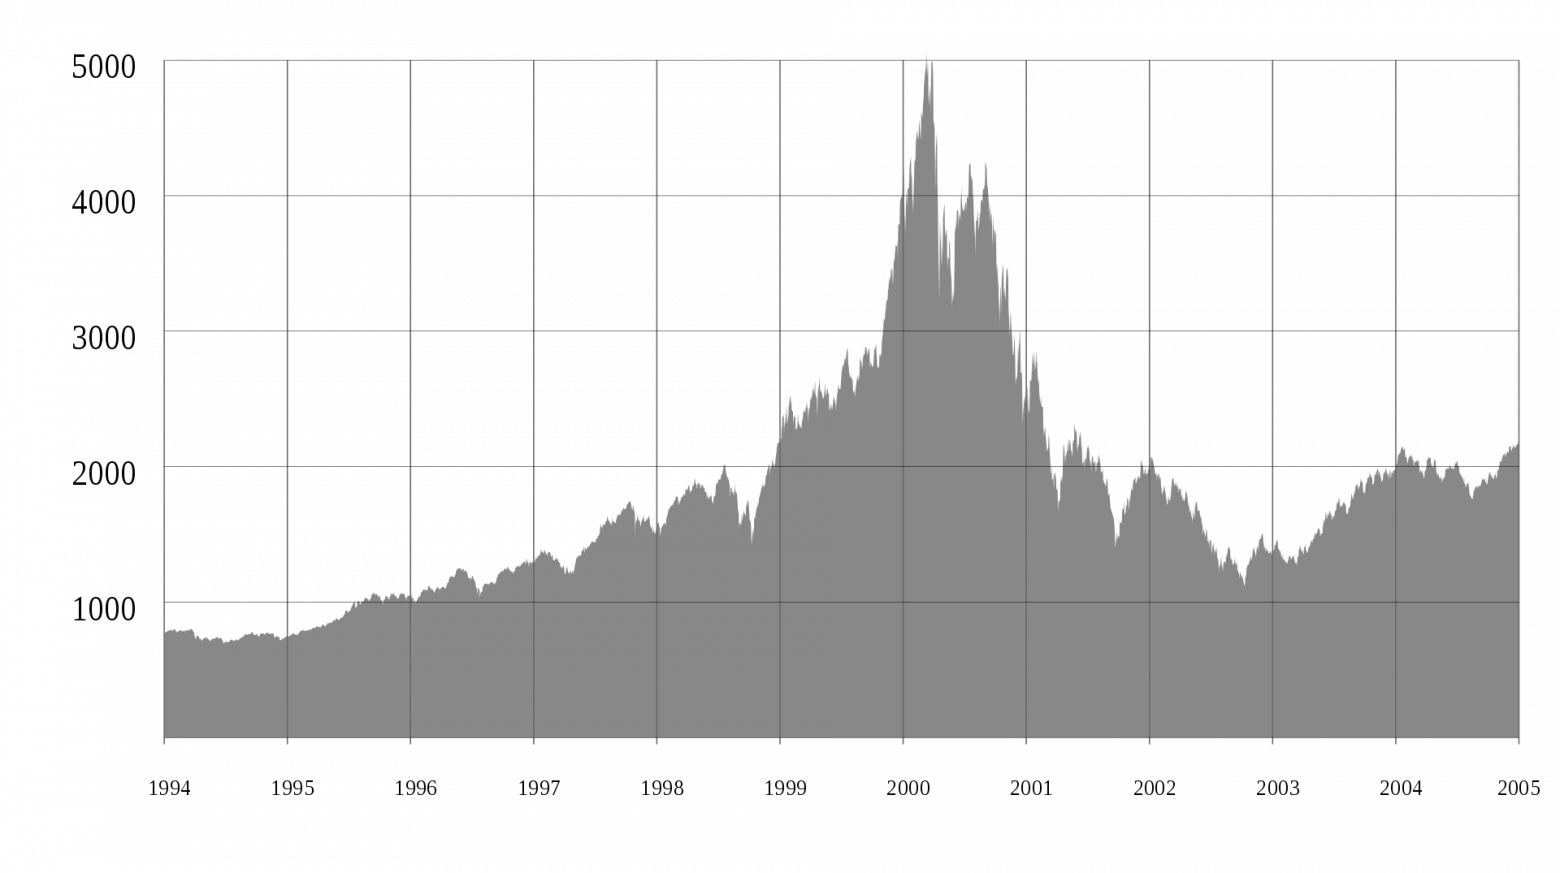 Индекс высокотехнологичных компаний NASDAQ Composite достиг своего пика в марте 2000 года, после чего упал на дно, сравнимое с до-сетевой эпохи (источник: wikipedia)